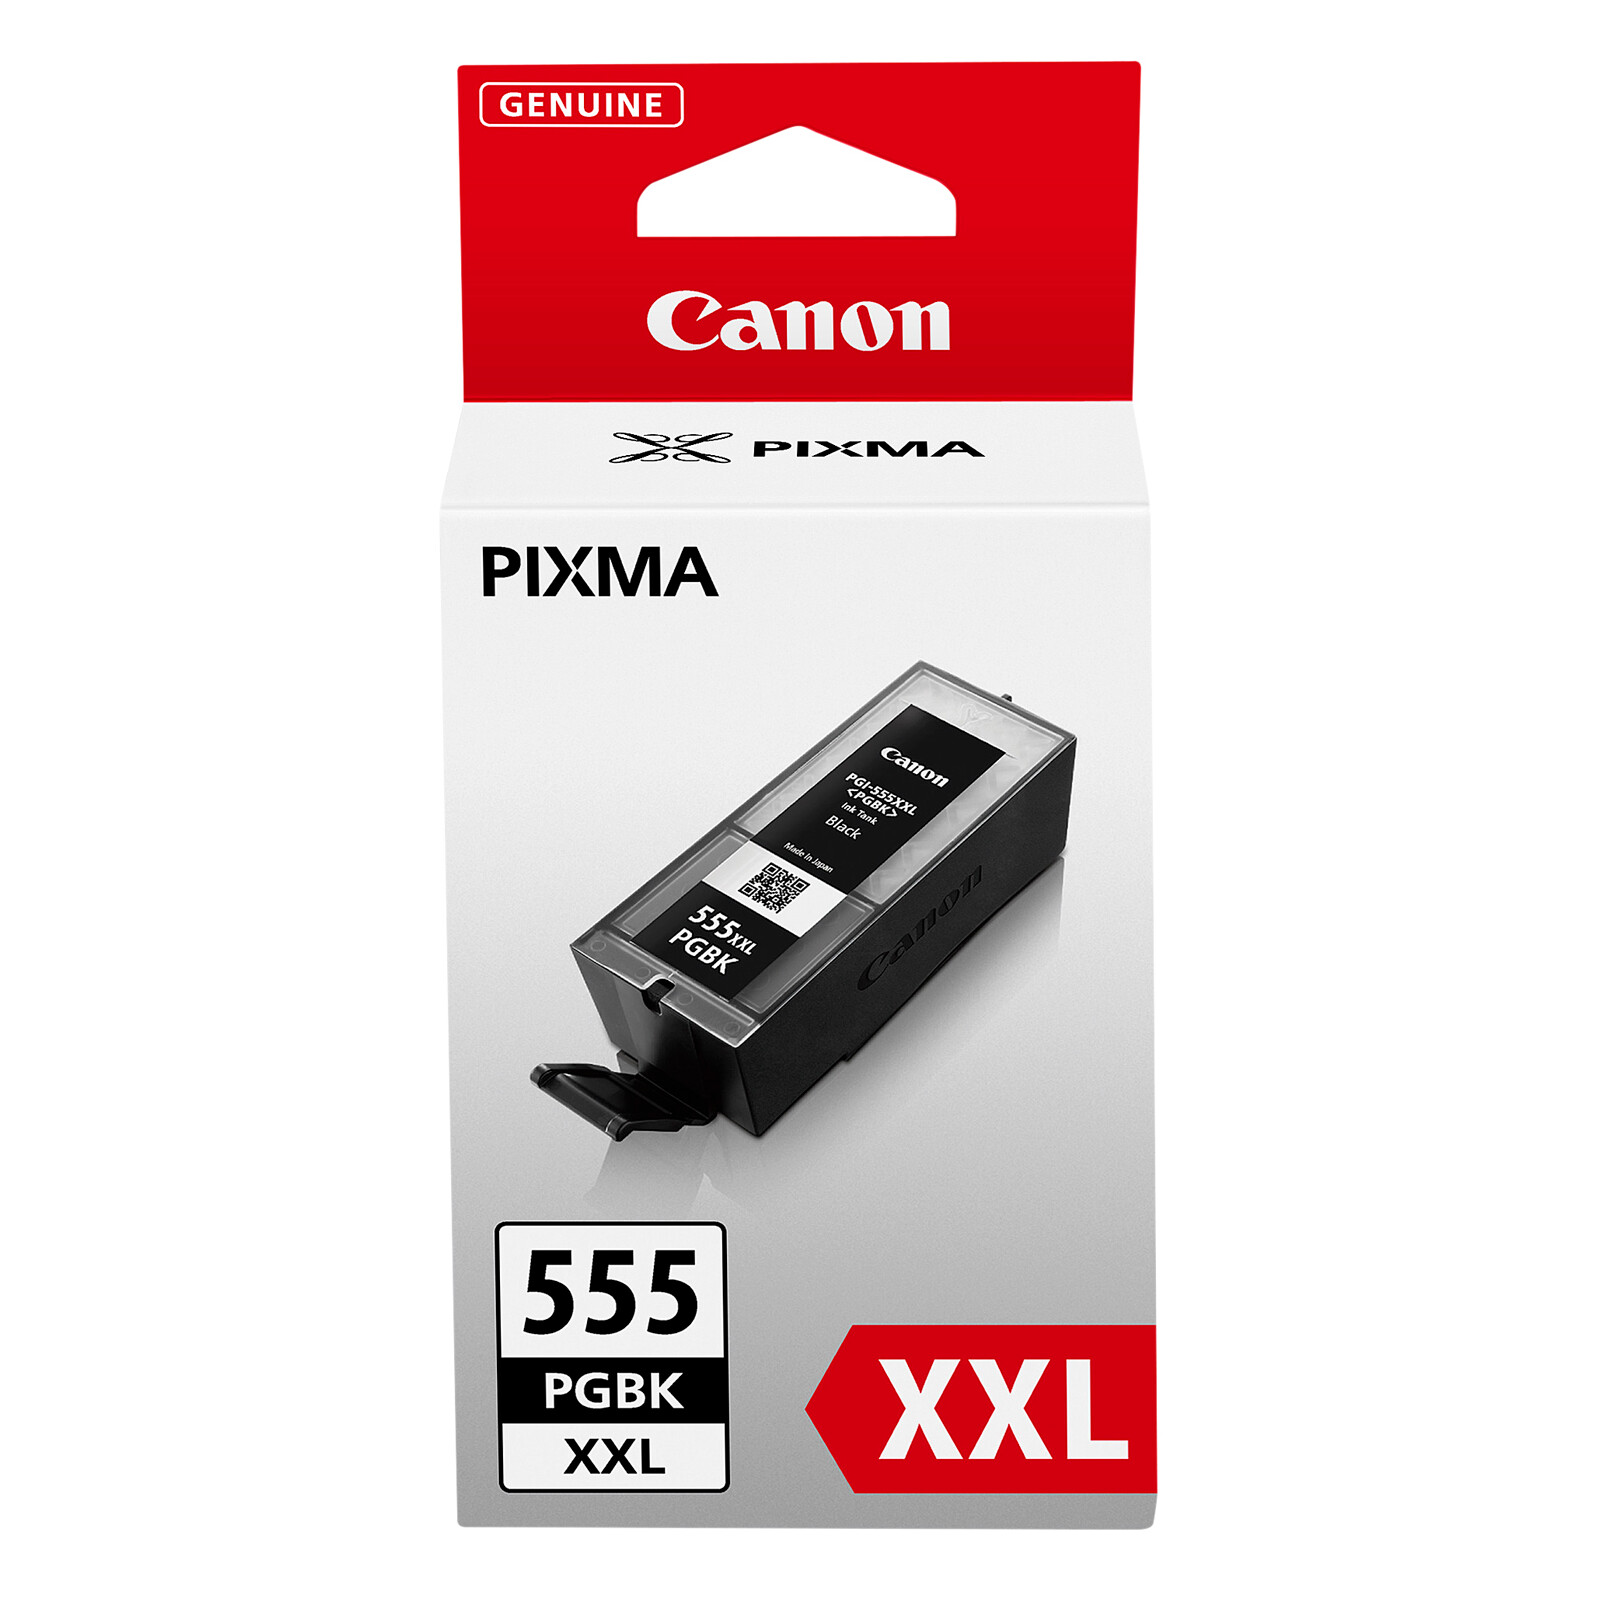 Canon PGI-555 XXL PGBK Tinte schwarz